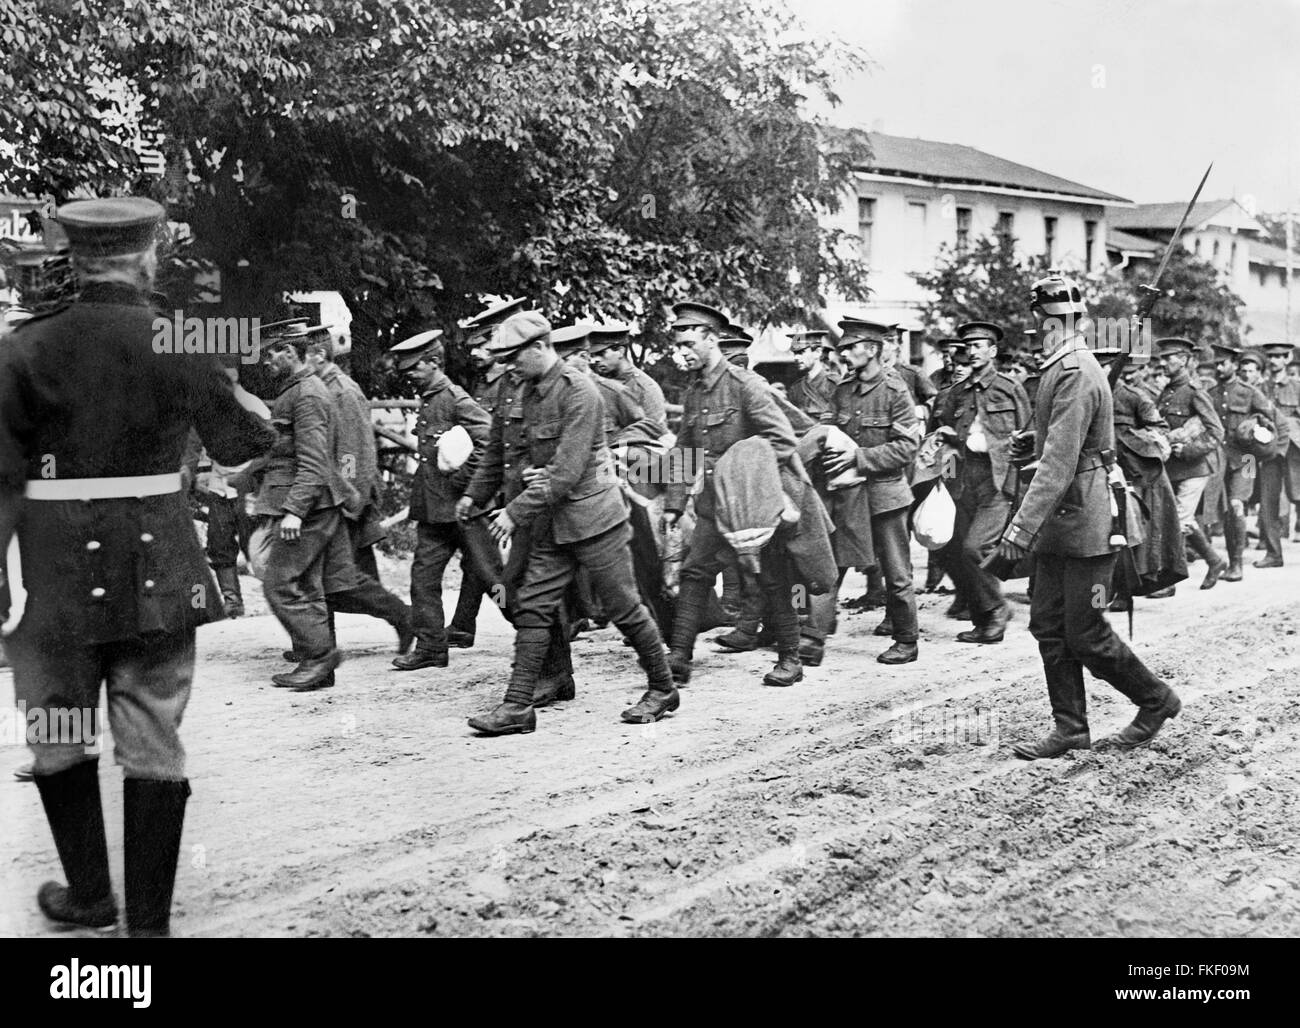 Les prisonniers britanniques en Allemagne qui sont prises pour les camps de prisonniers de guerre après les combats dans la somme pendant la Première Guerre mondiale. Photo de Bain News Service, 1916 Banque D'Images